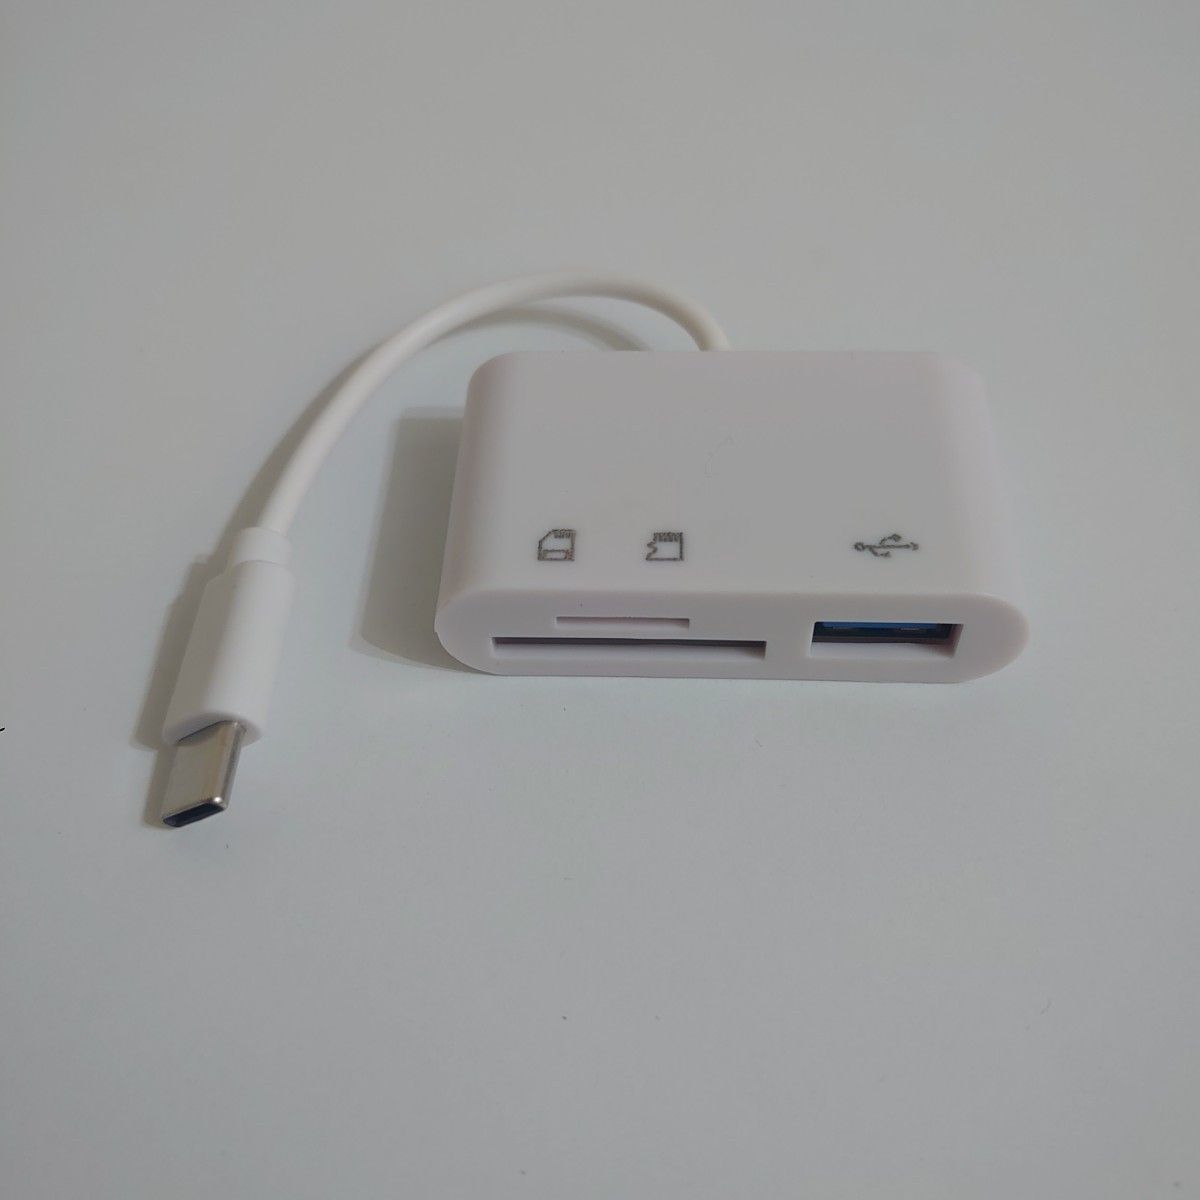 タイプC 3in1 SD カードリーダー USBポート MicroSD